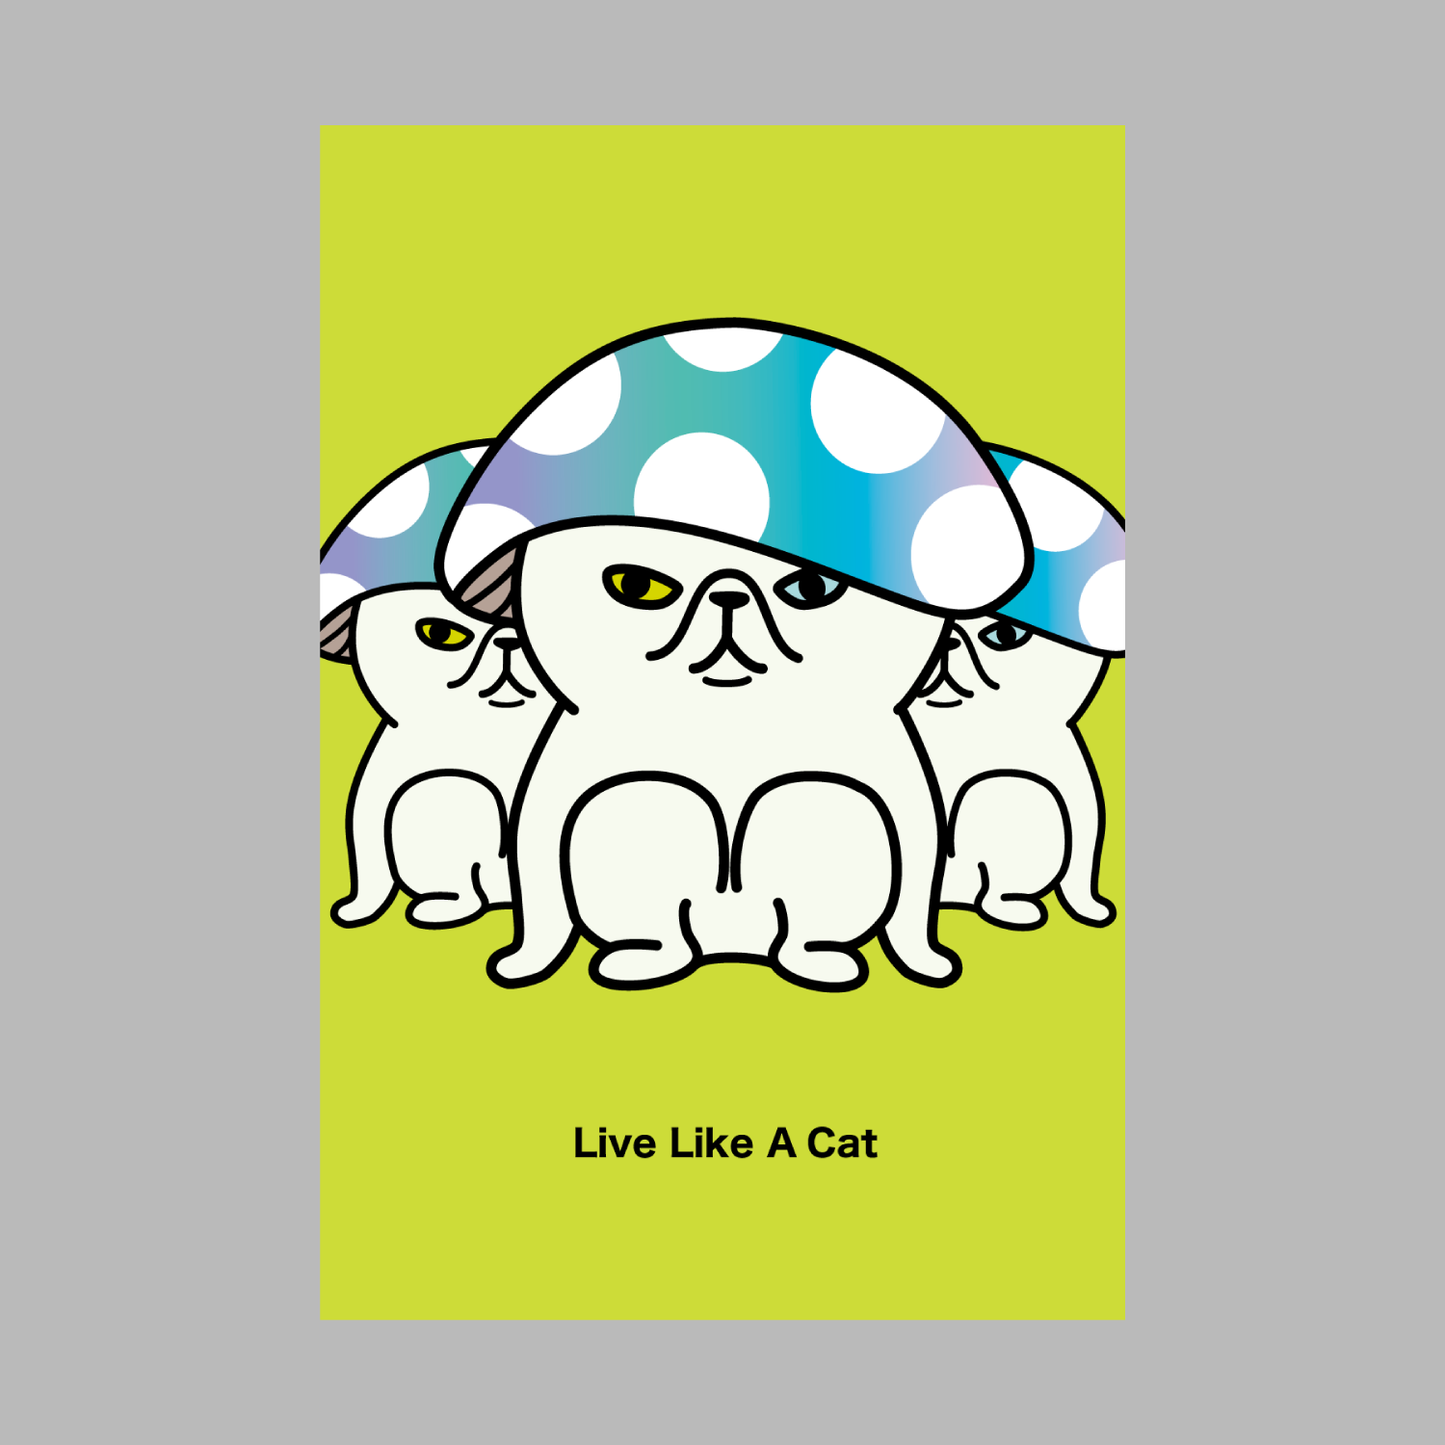 Post Card Set B - Mushroom -